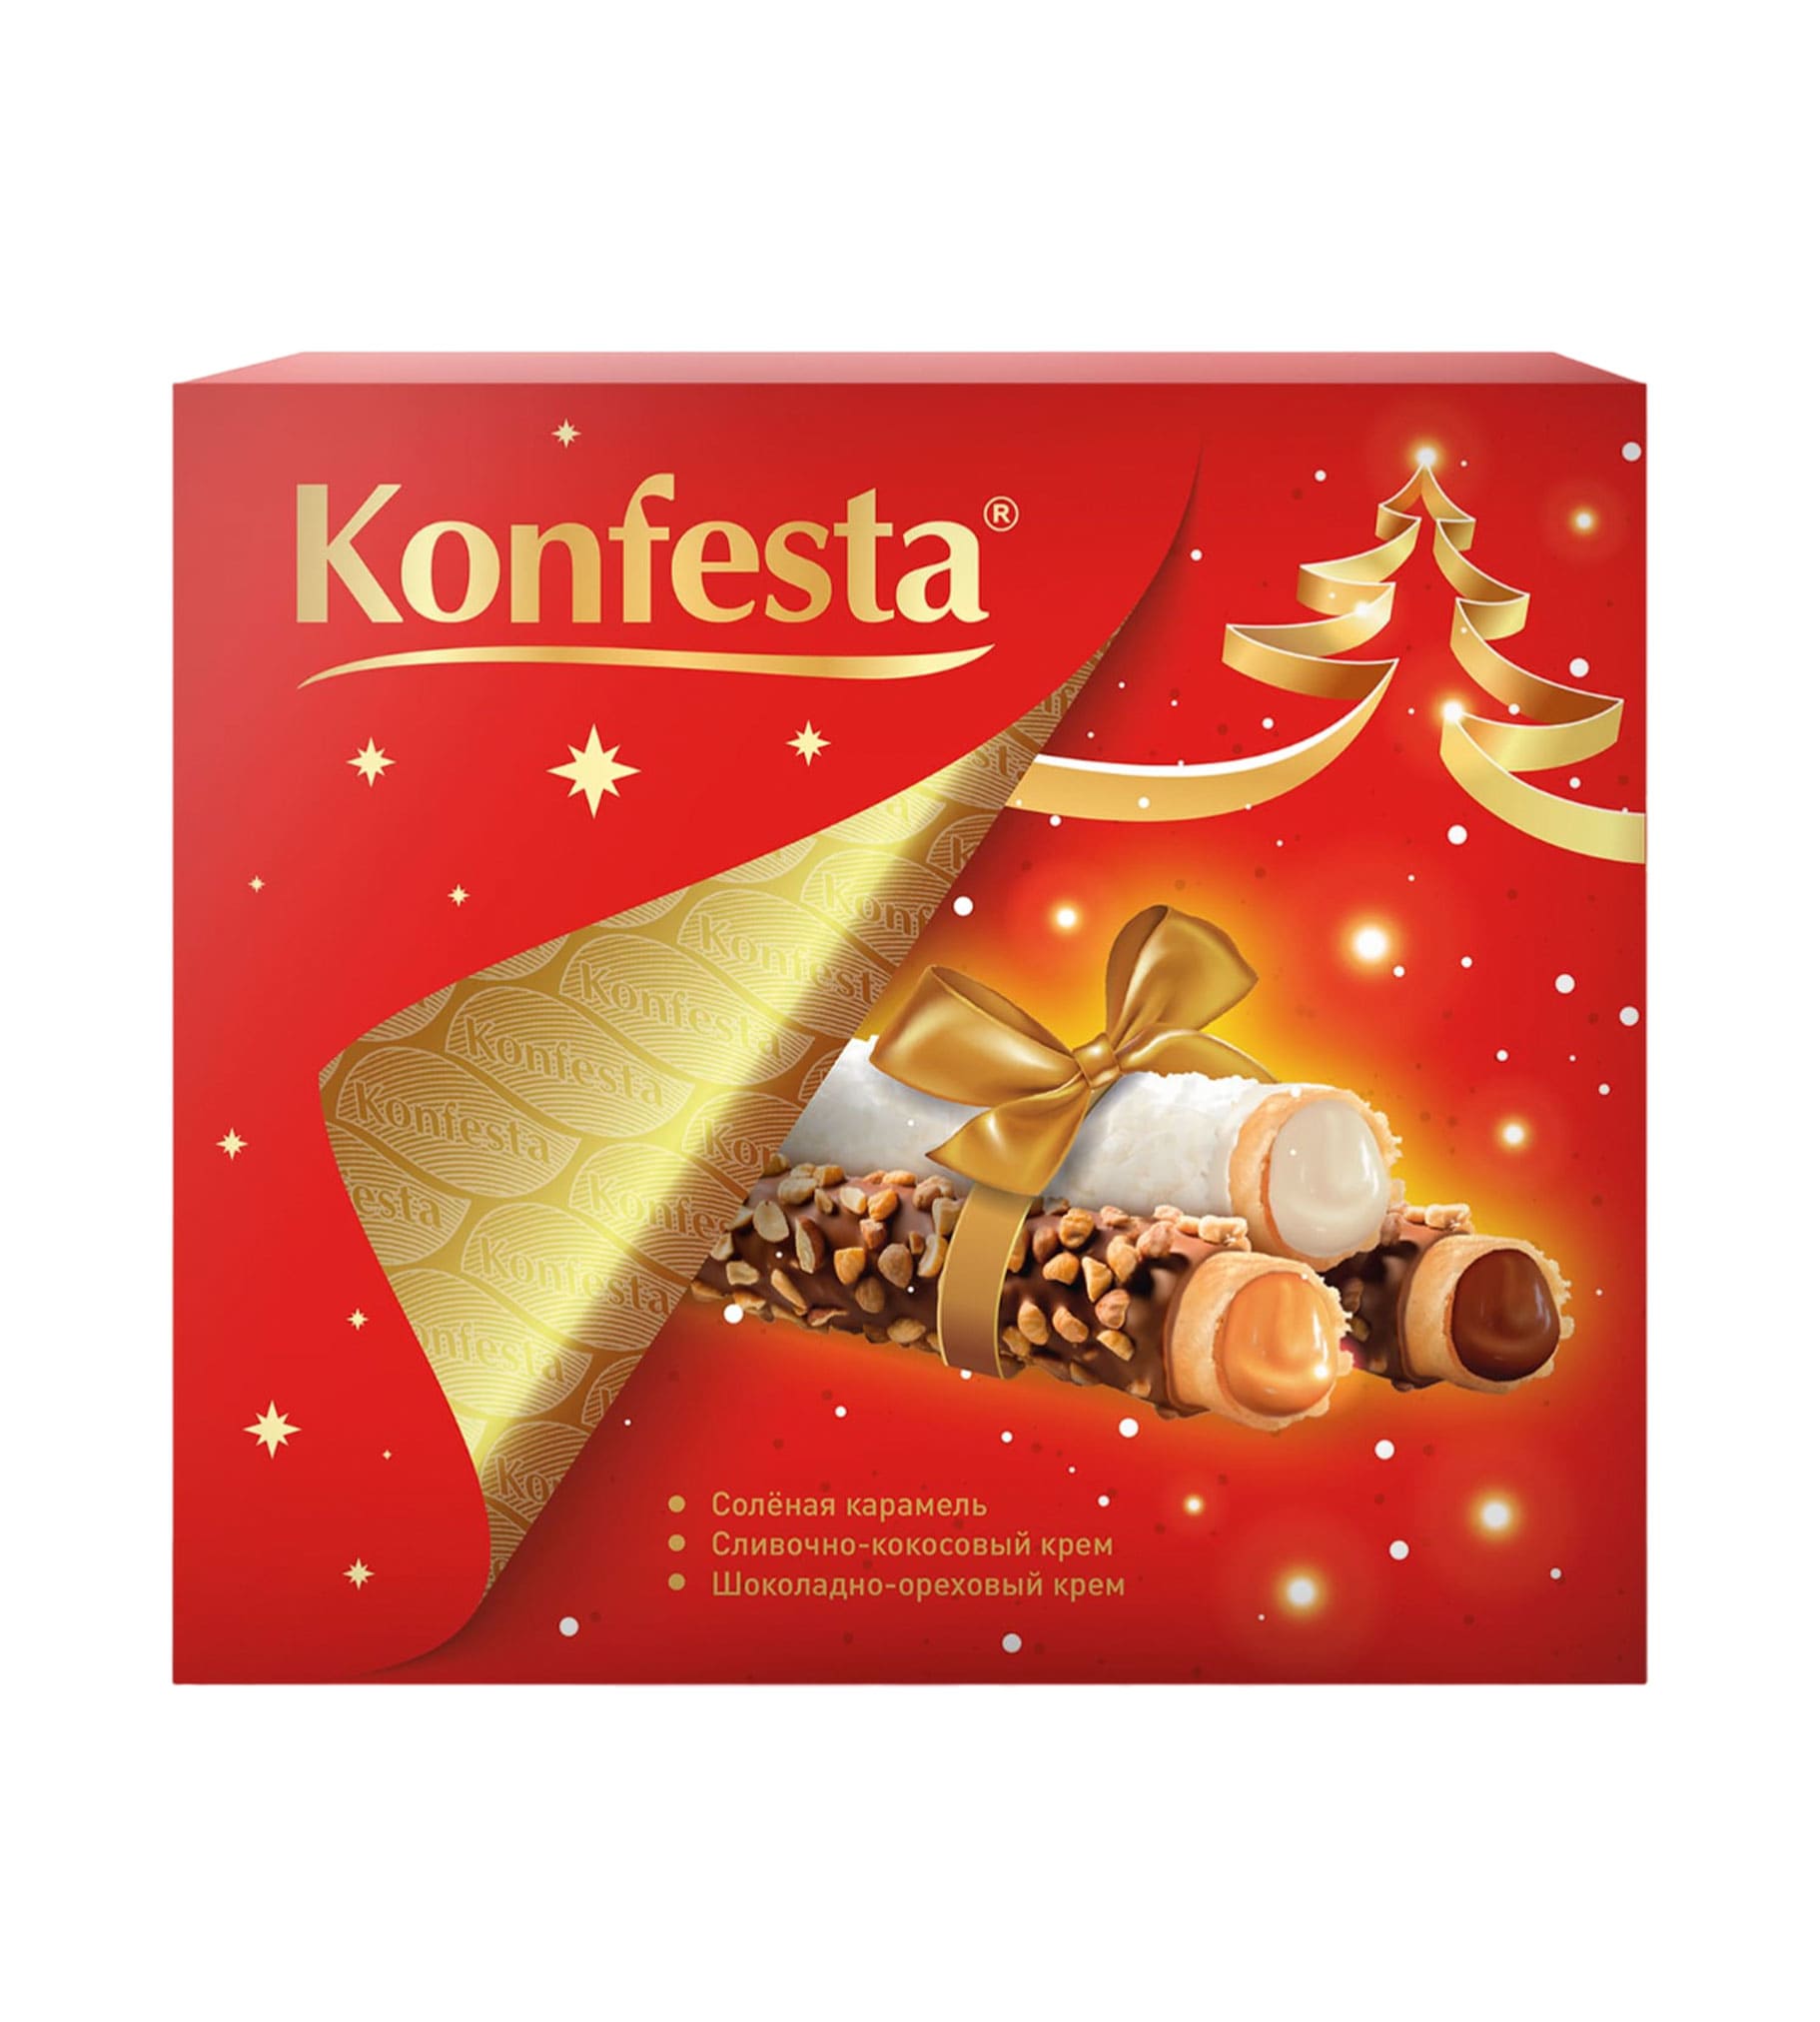 Конфеты Ассорти «Konfesta» соленая карамель, сливочно-кокосовый крем, шоколадно-ореховый крем, подарочная коробка